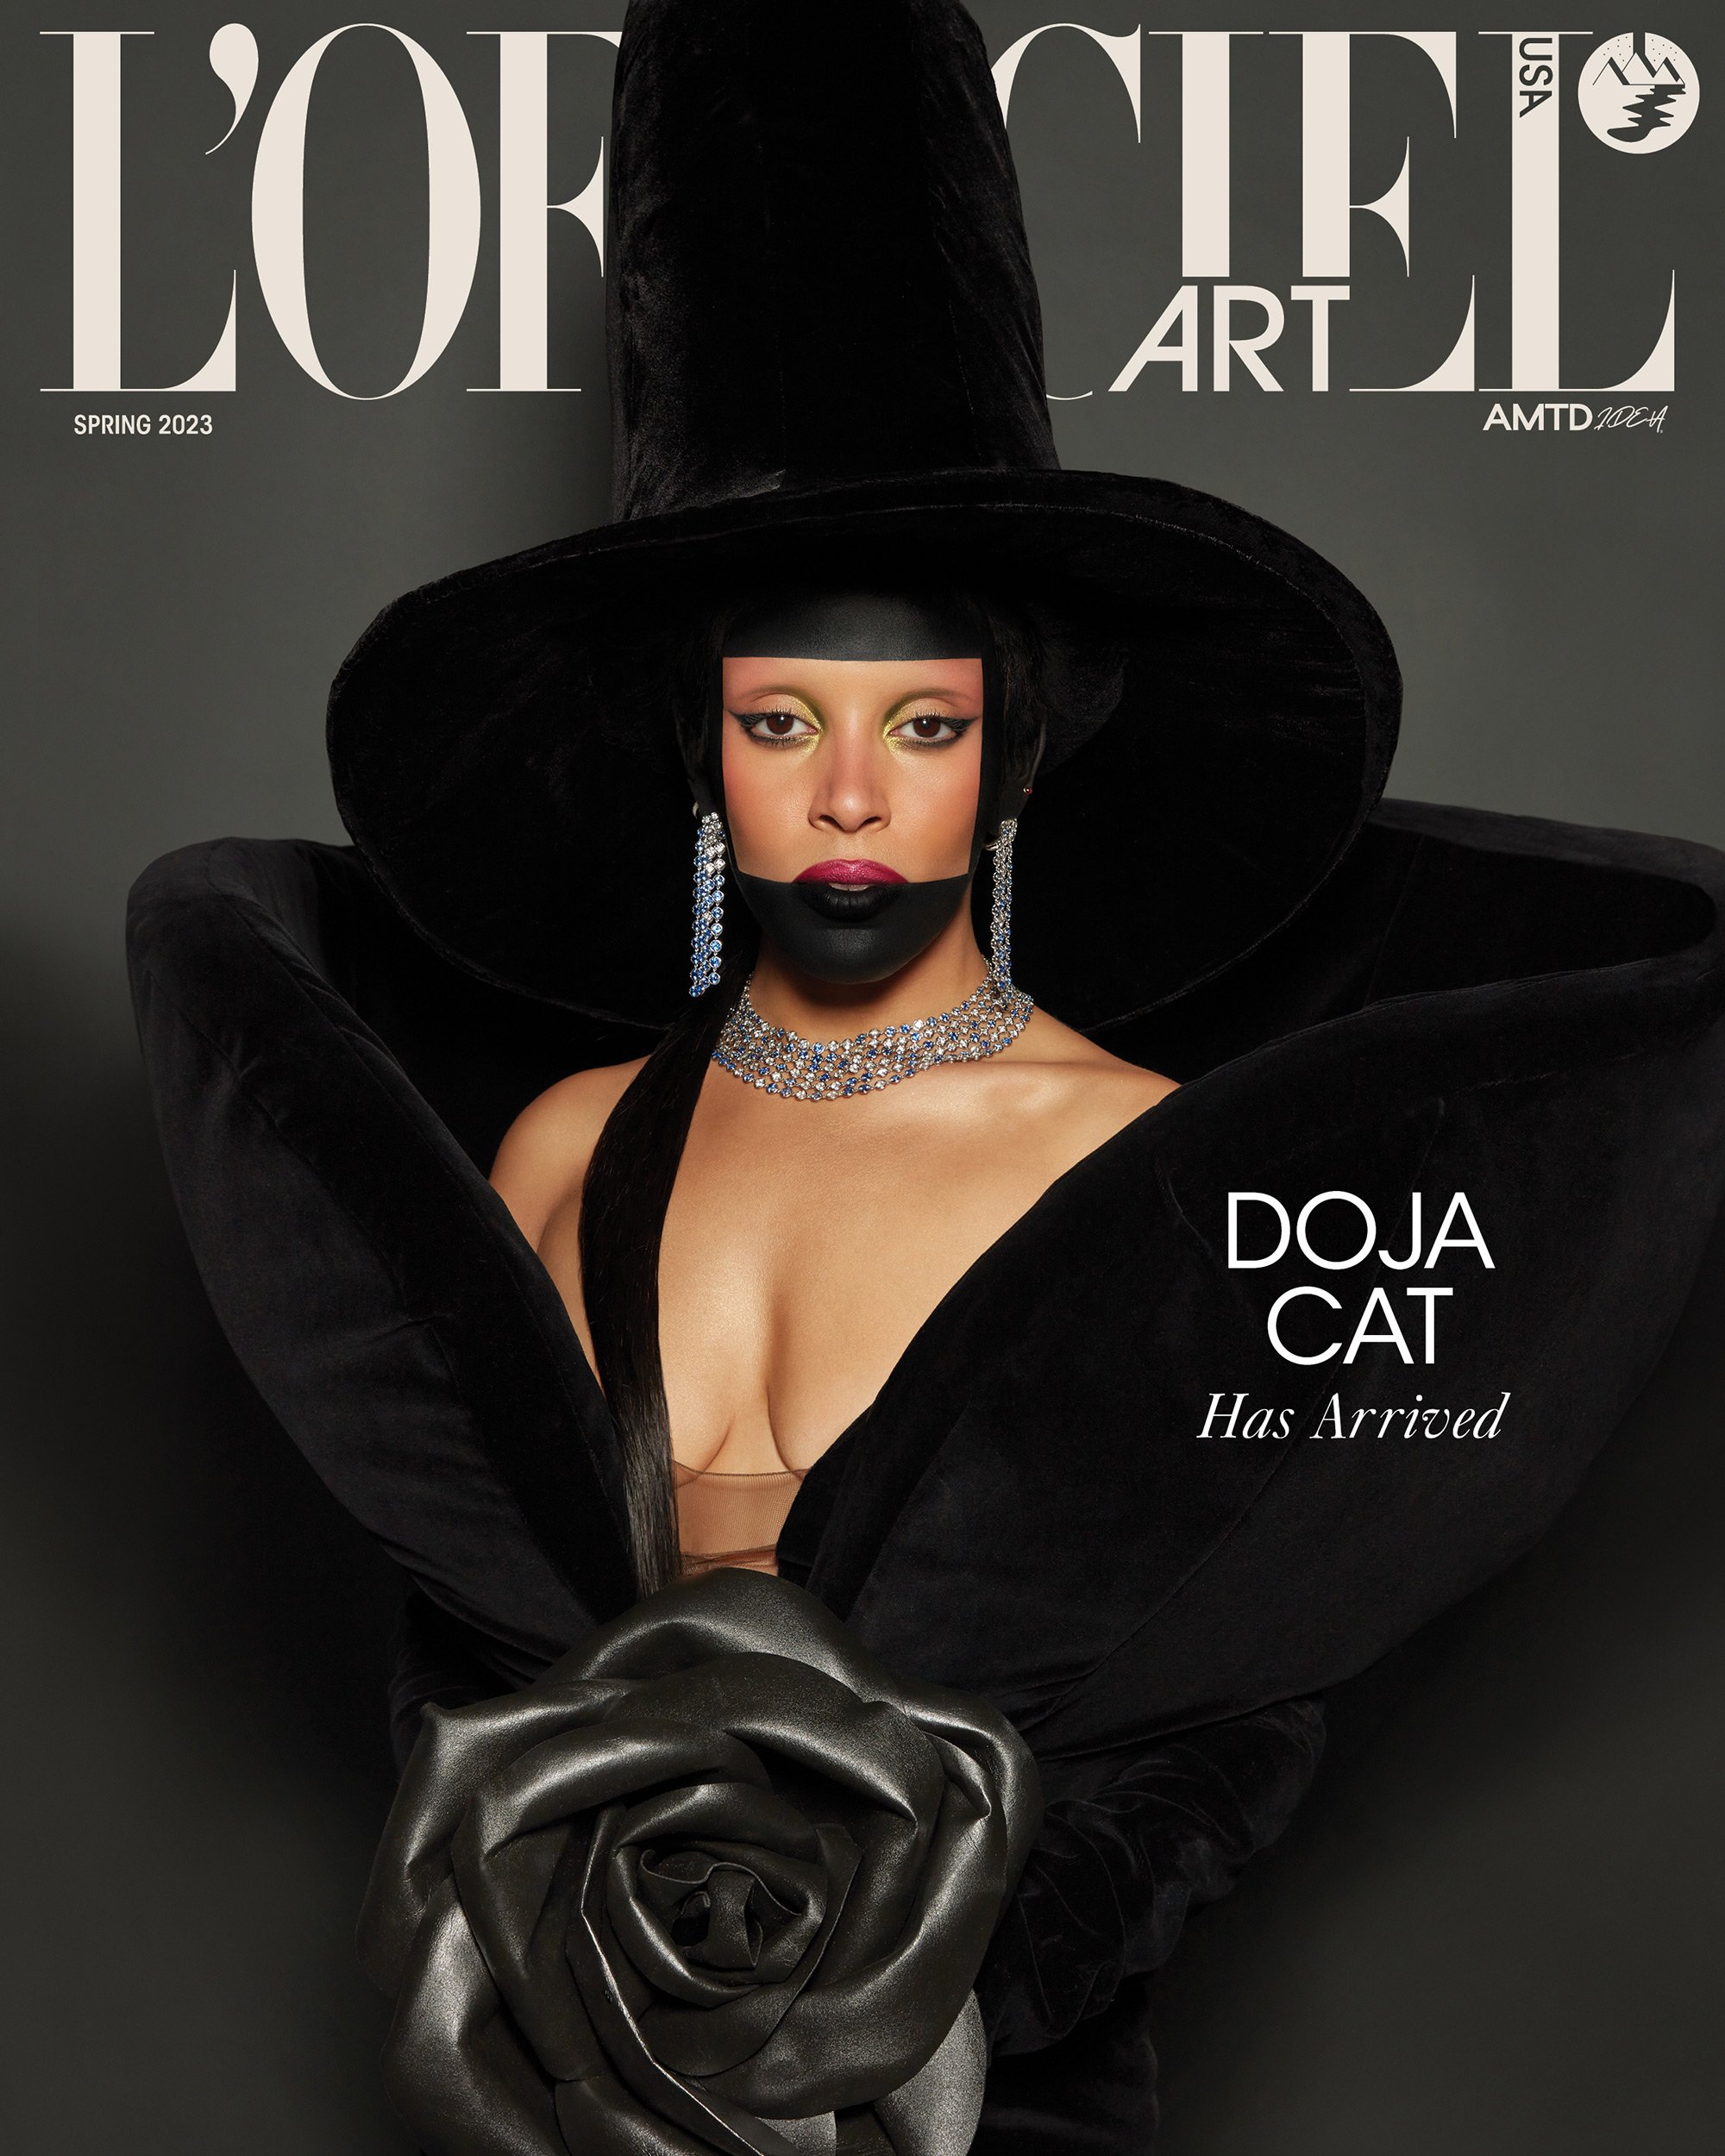 Doja-Cat-L'Officiel-Art-by-Doja-Cat-Cover-2.jpg